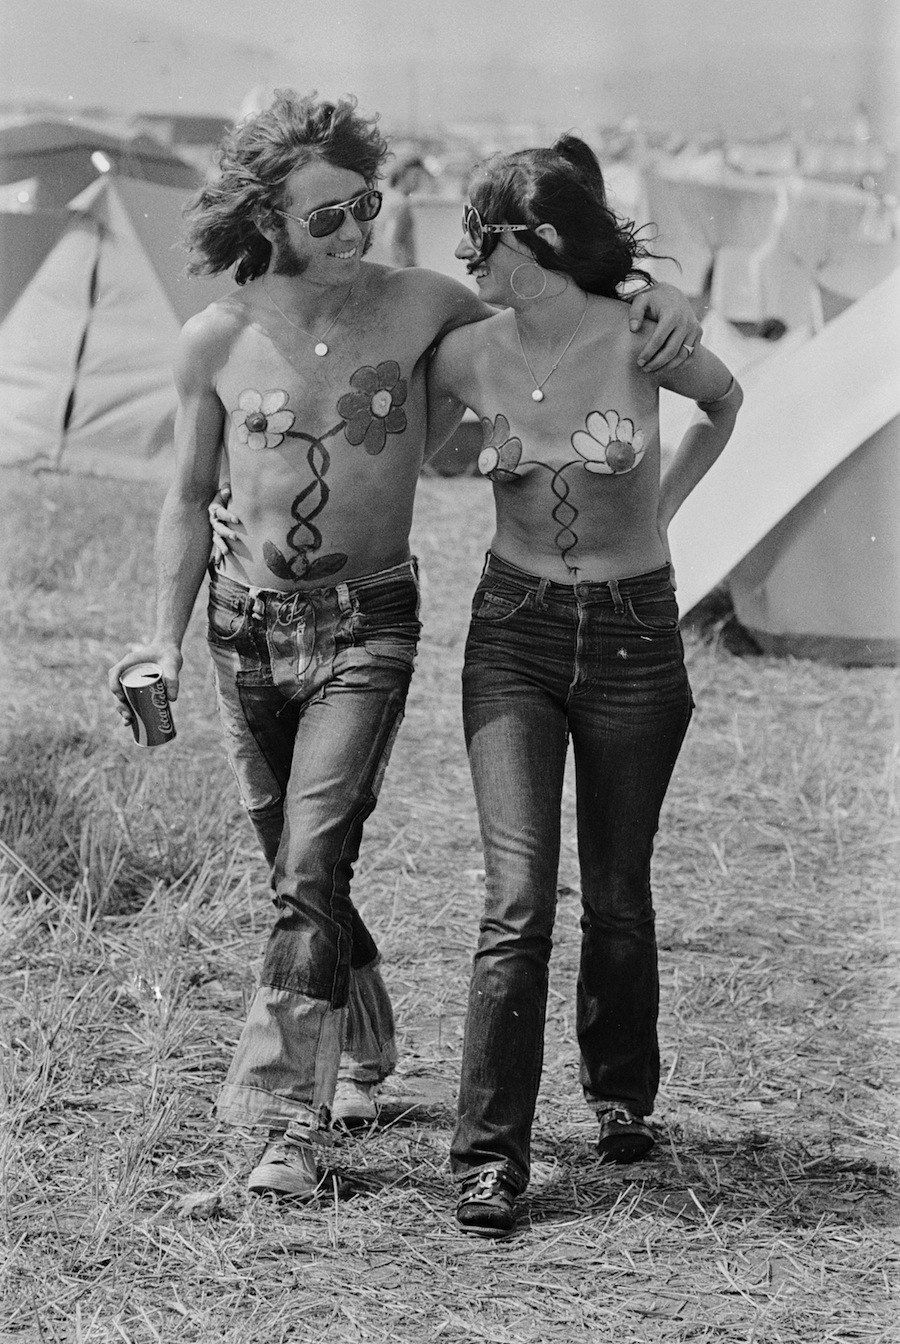 Музыкальный Фестиваль на острове Уайт: фотографии 60-70-х гг.